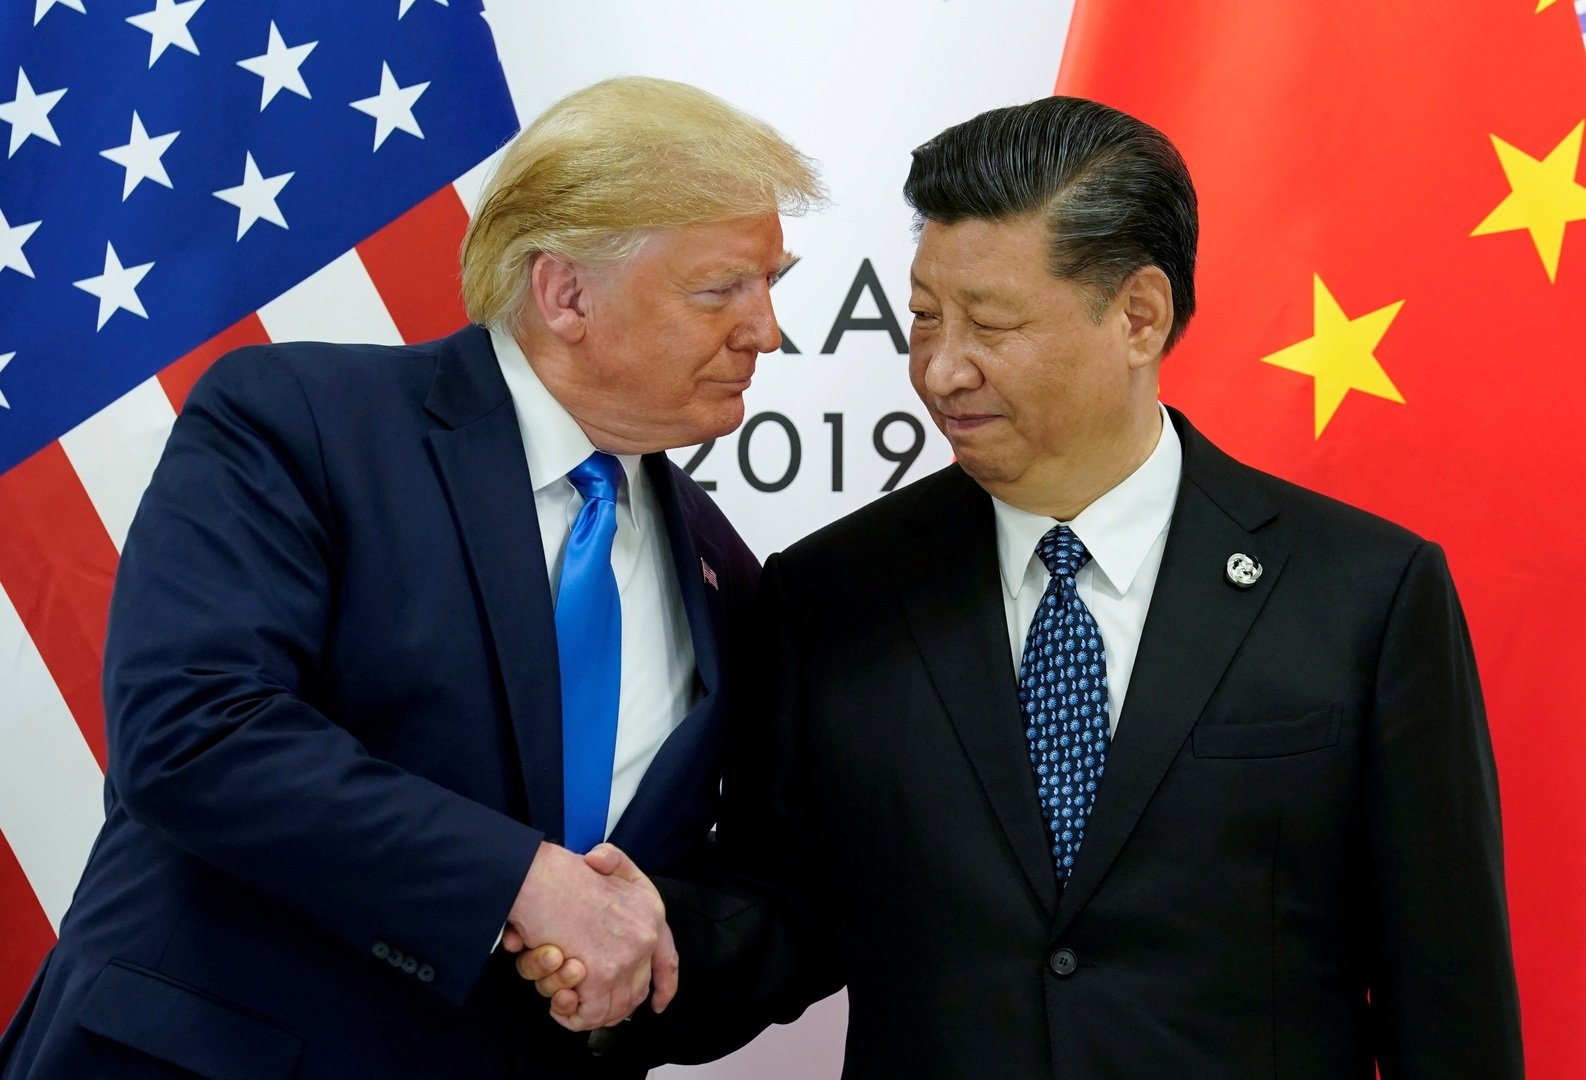 بكين: نسعى لاتفاق تجاري مع واشنطن لكننا لا نخشى الحرب معها